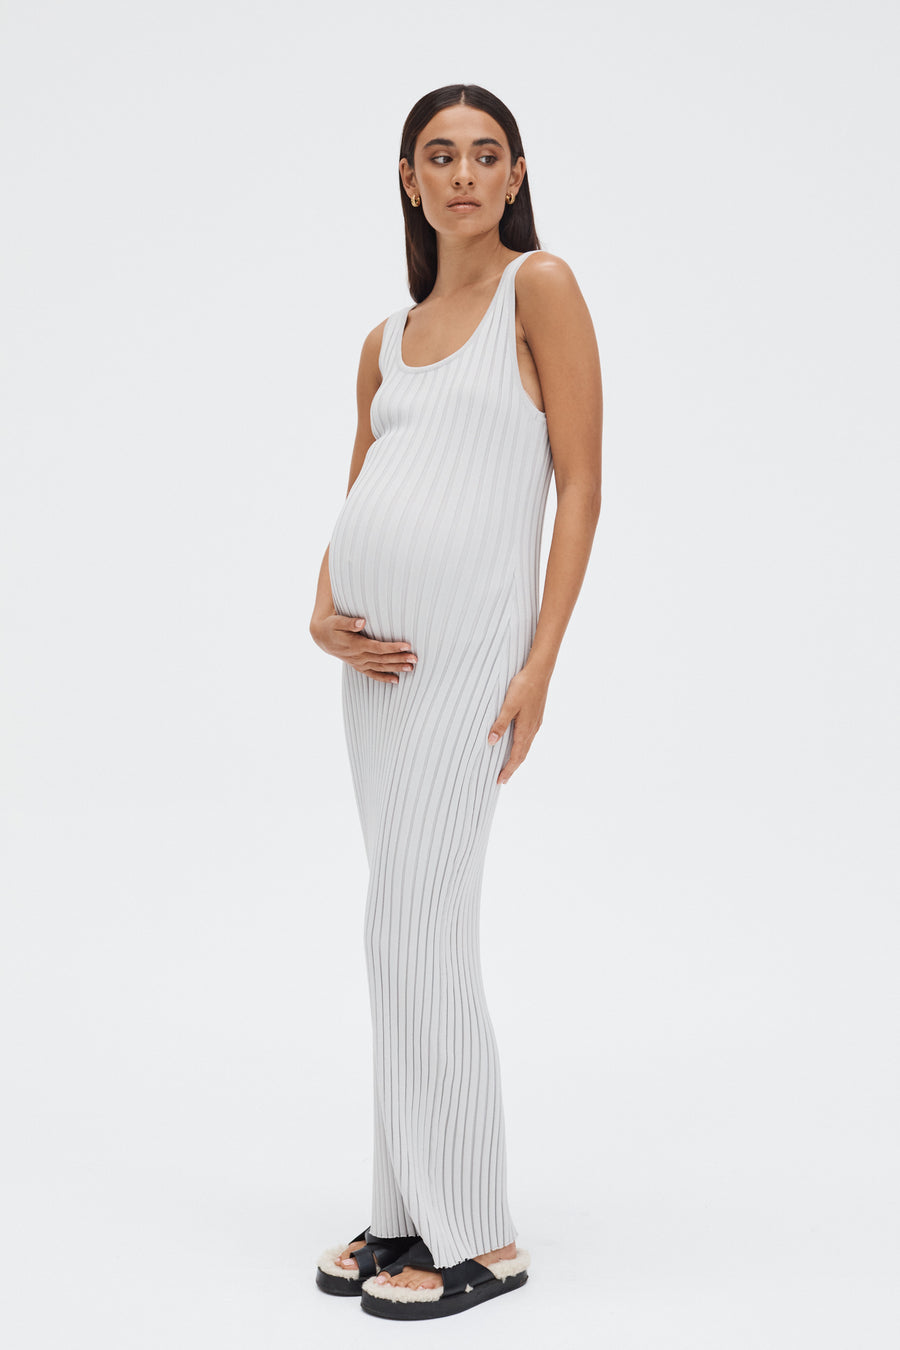 Stylish Maternity Maxi Dress (Stone) 4